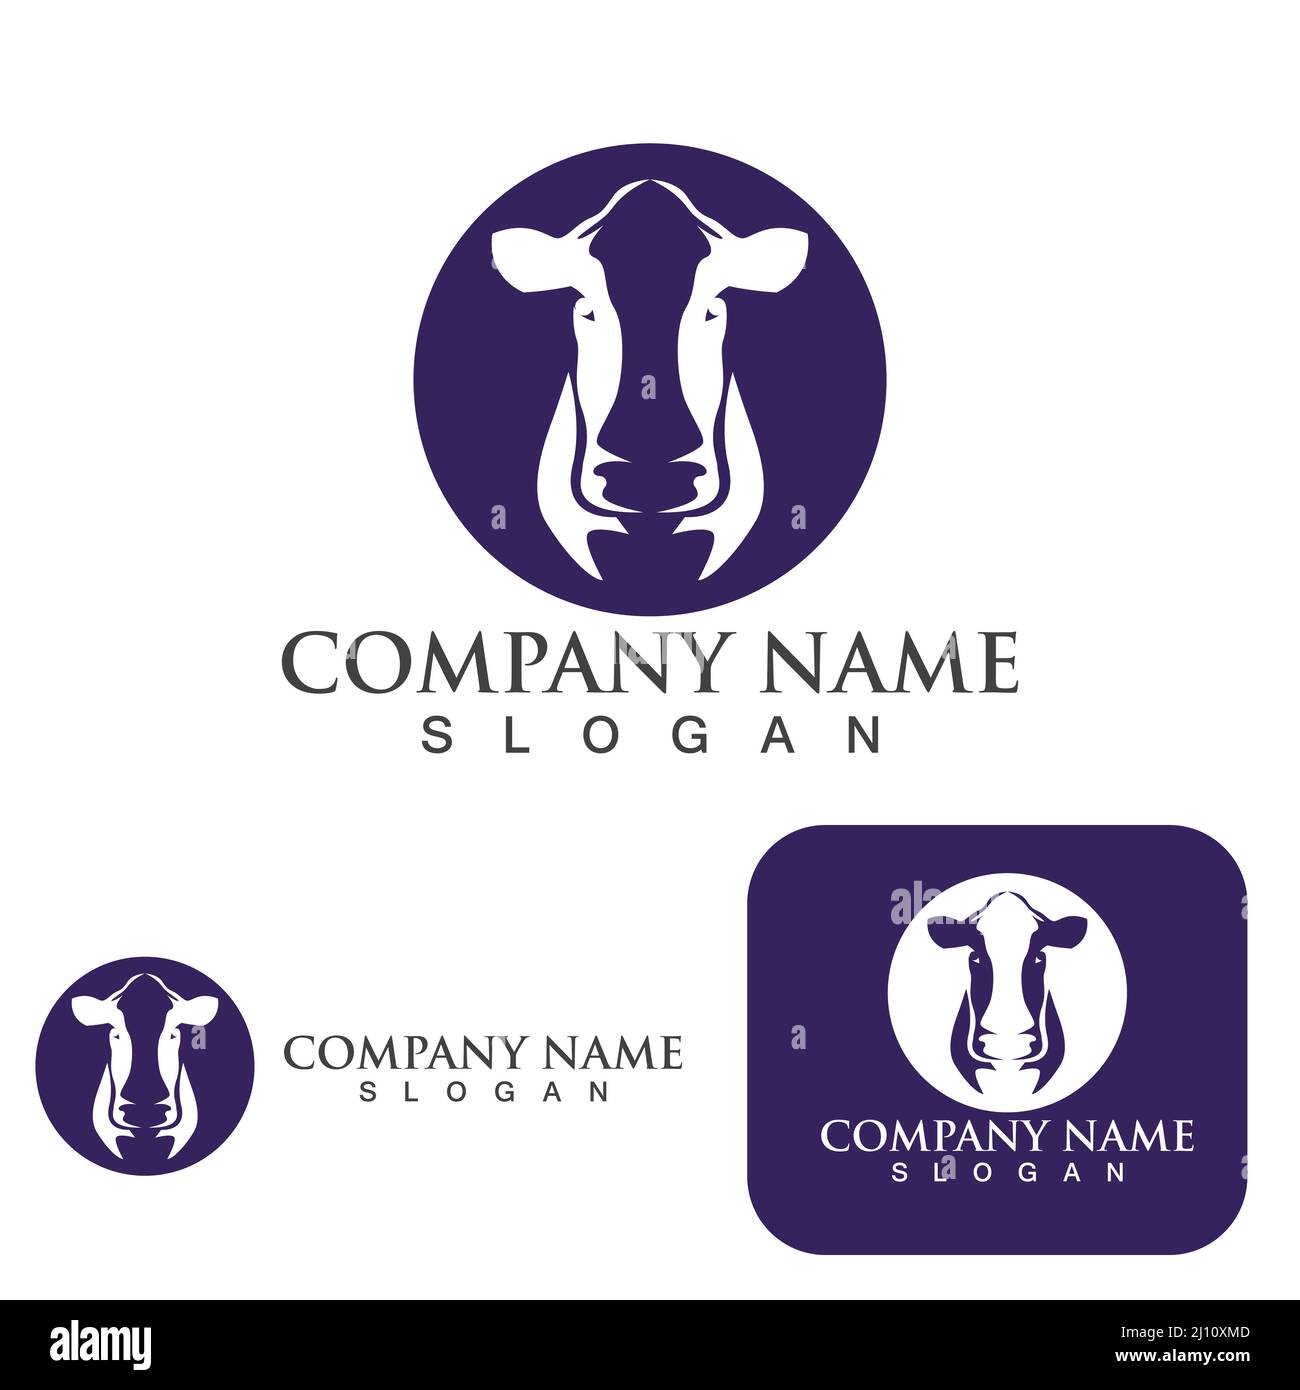 Cow head logo vector template Stock Vector